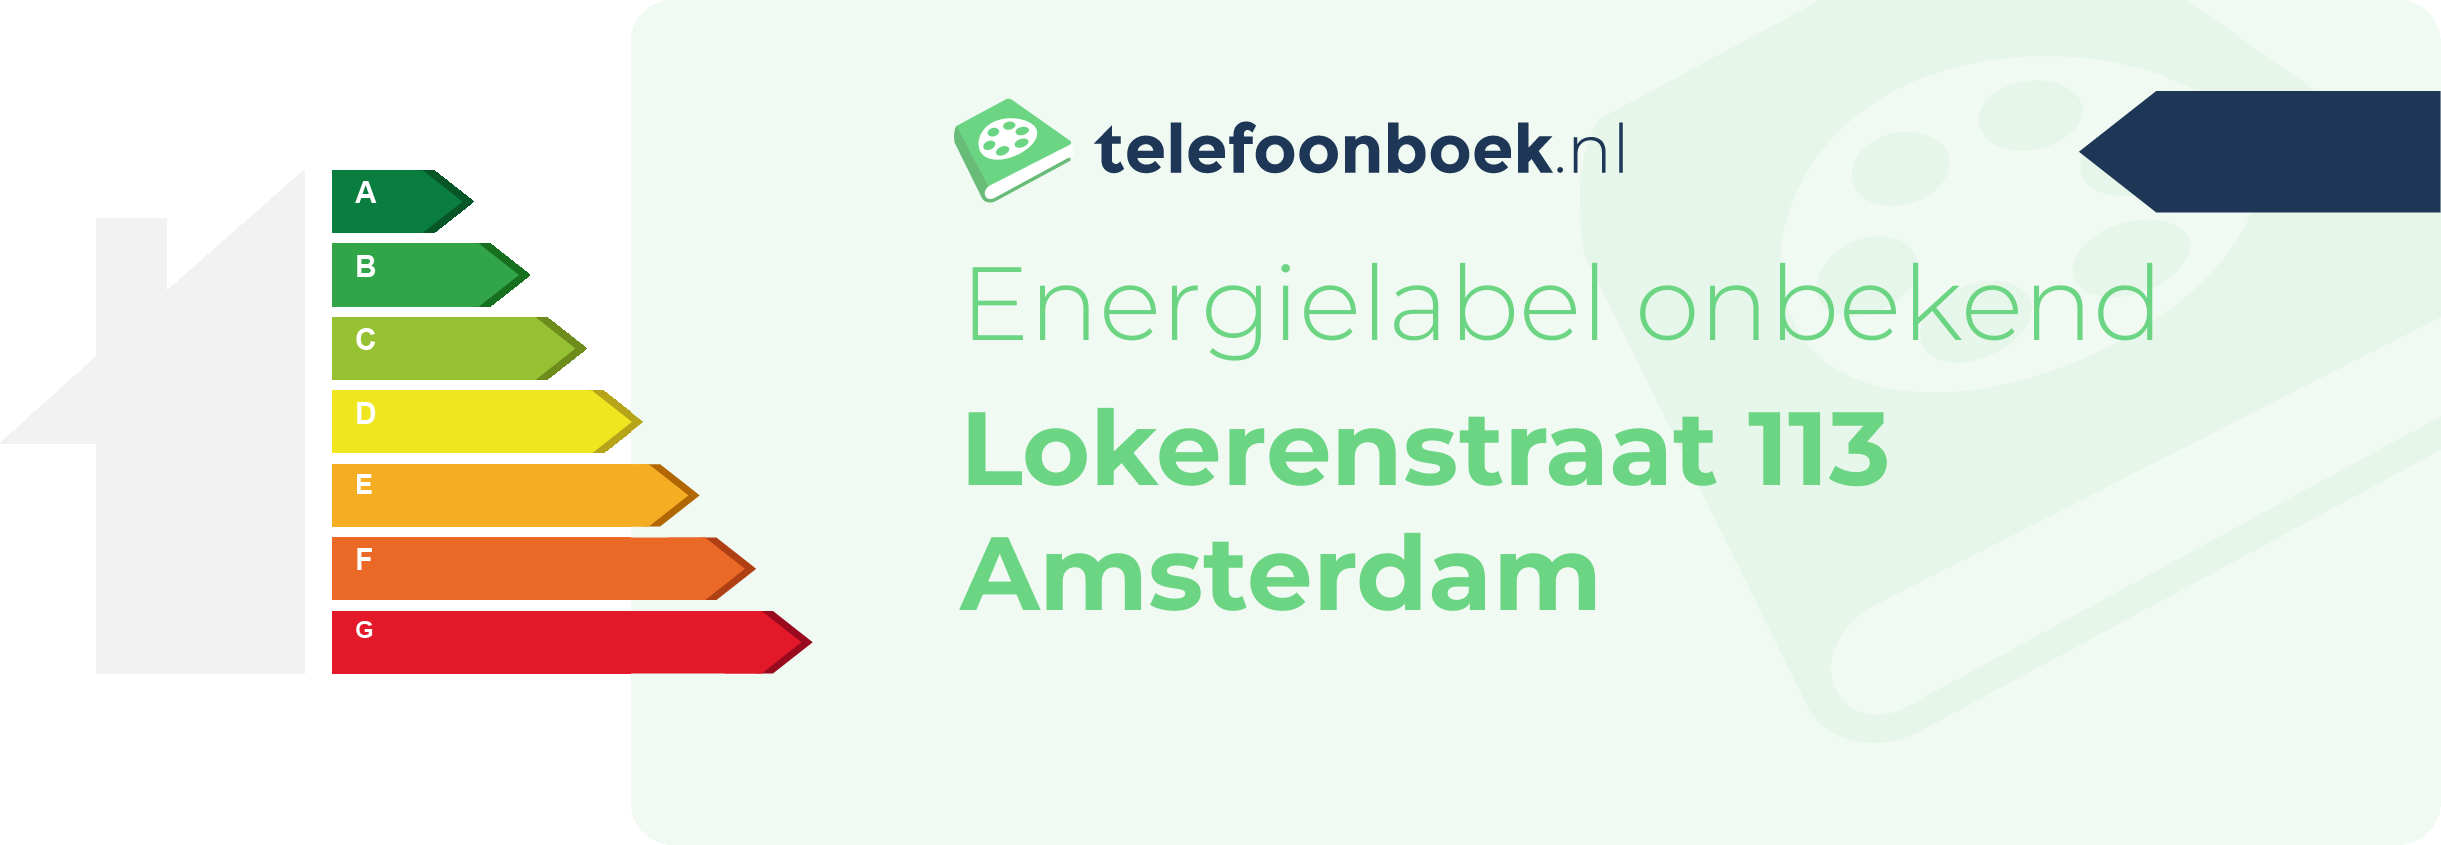 Energielabel Lokerenstraat 113 Amsterdam